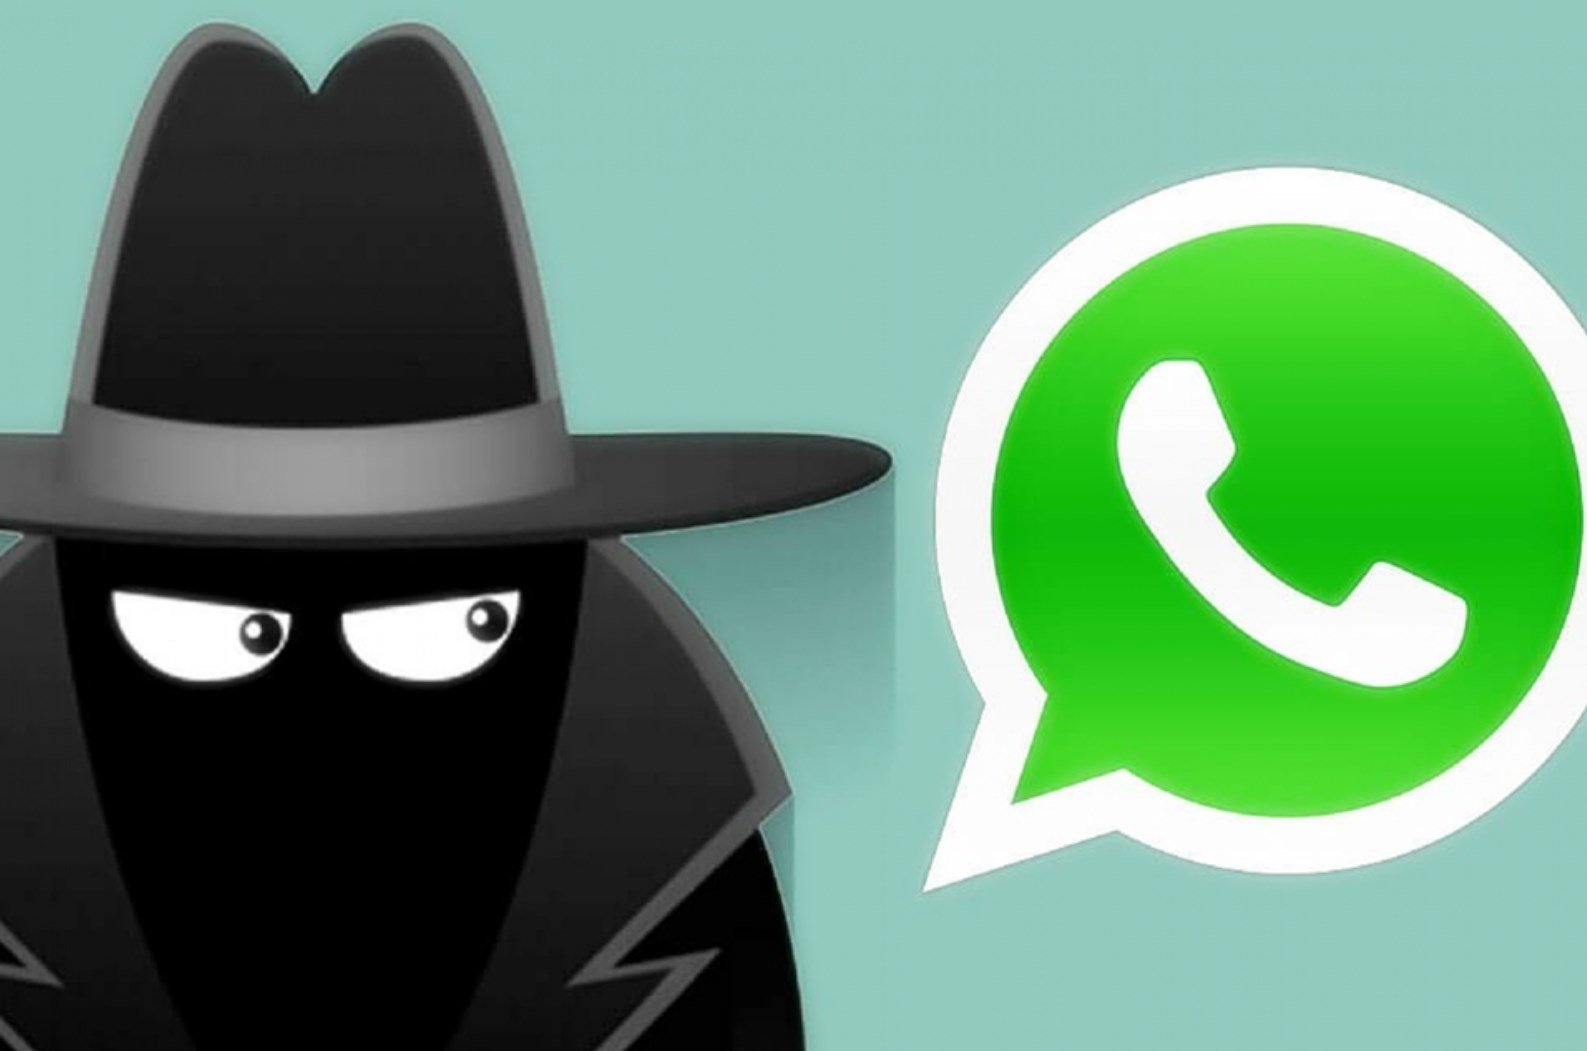 Como clonar WhatsApp? Entenda os perigos do golpe e saiba se proteger